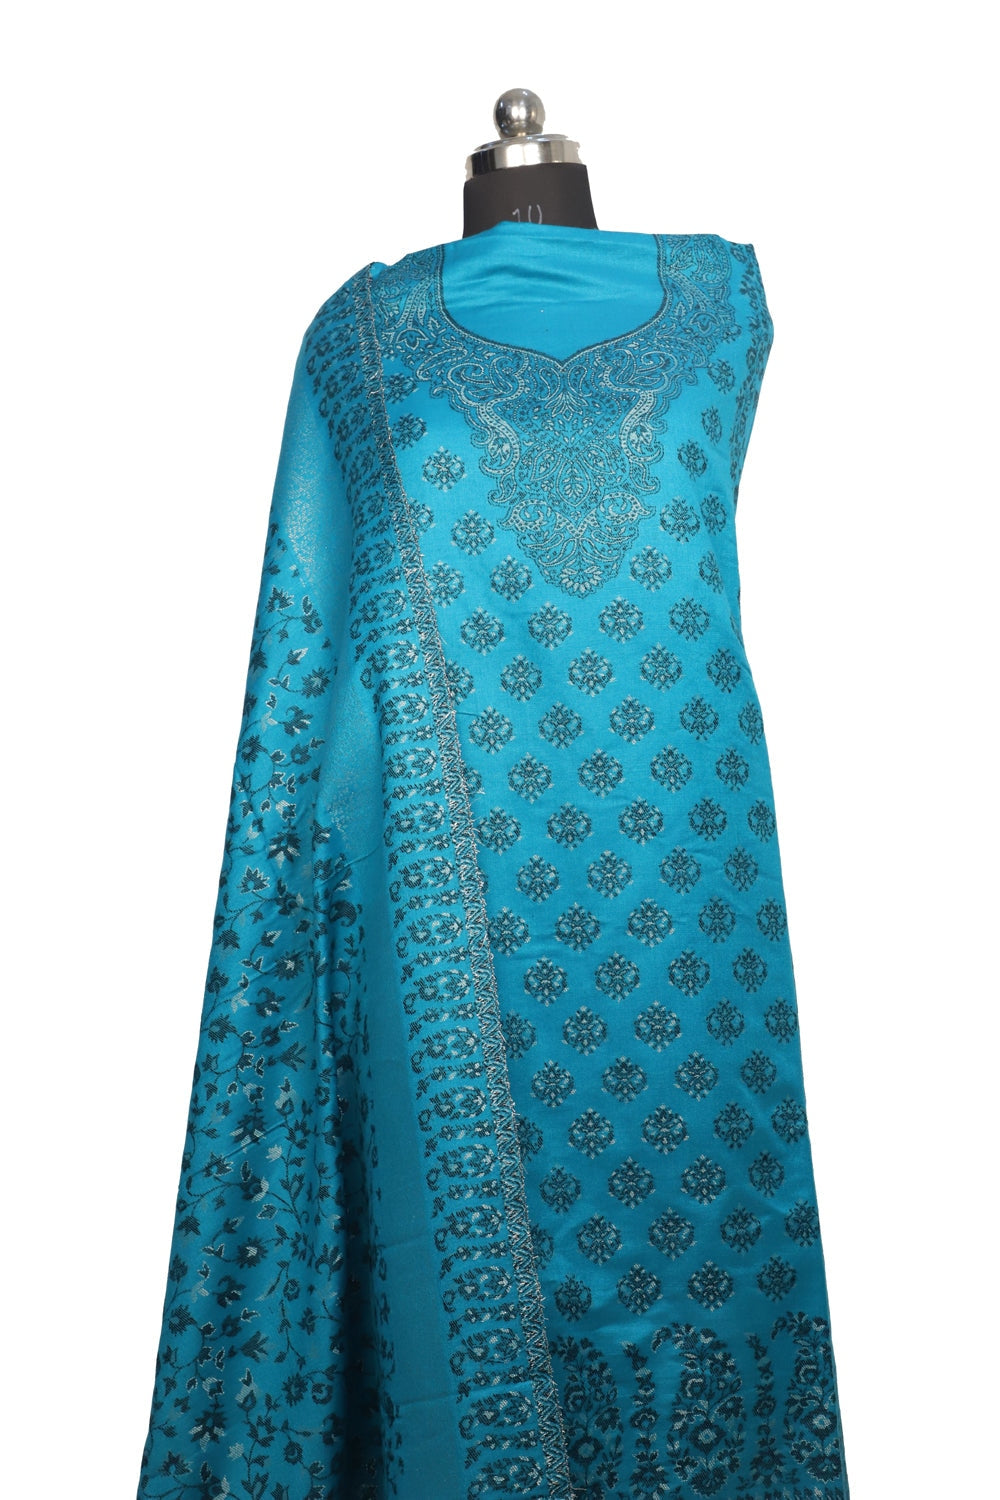 Blue Color Woolen Kashmiri Kani Work Unstitched Suit Fabric